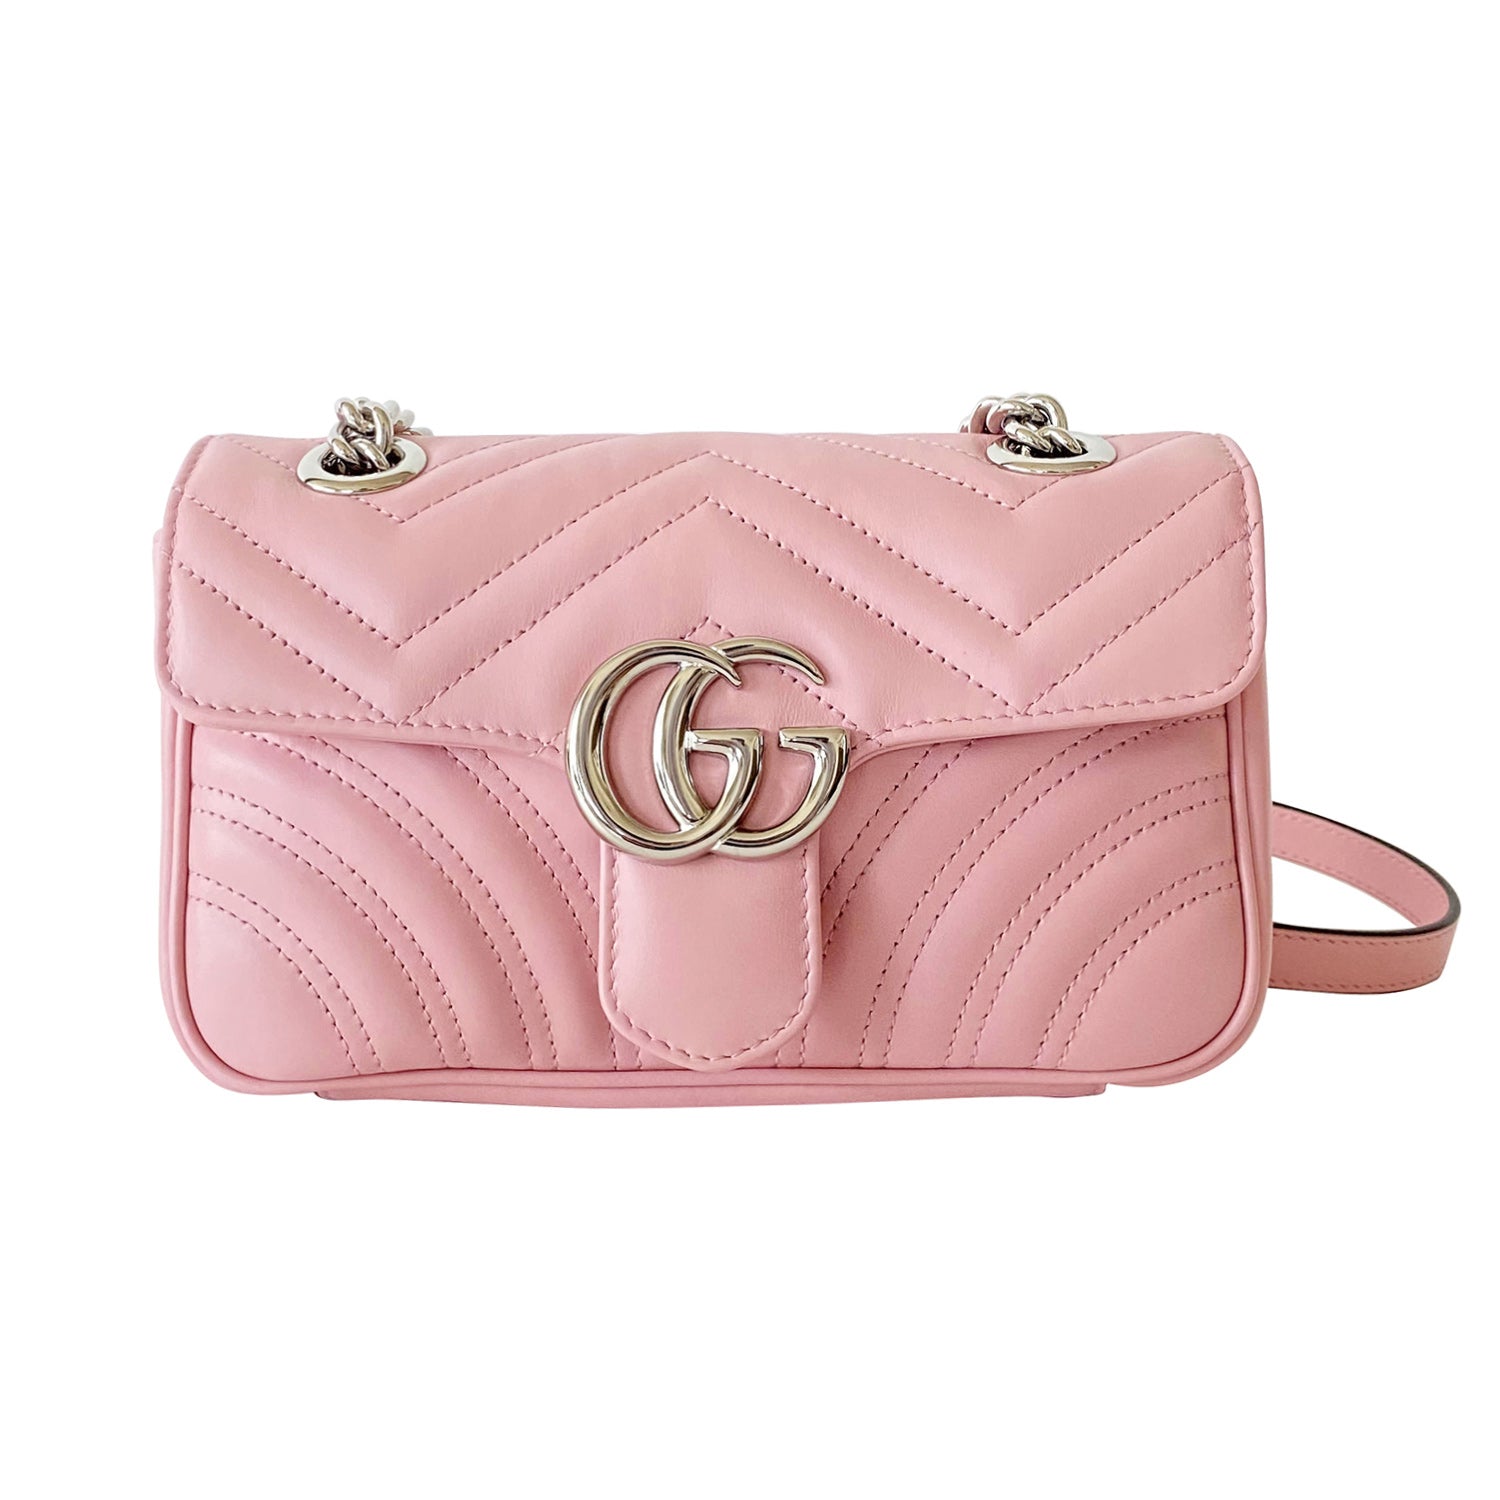 Shop authentic Gucci GG Marmont Matelassé Mini Bag at revogue for just USD  1,700.00